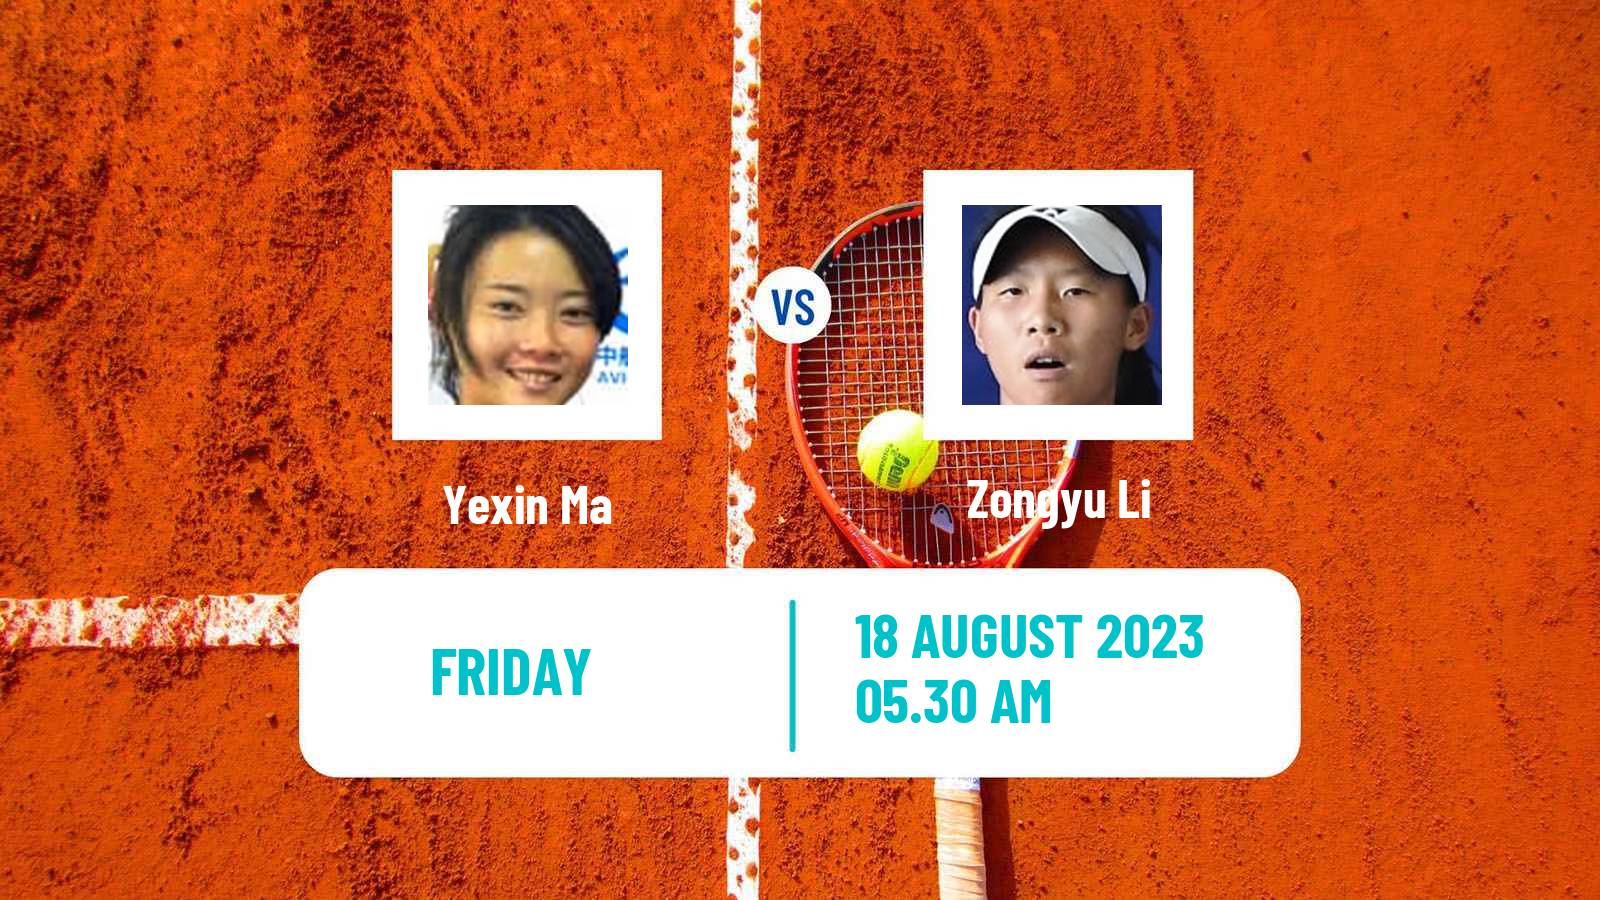 Tennis ITF W40 Nanchang Women Yexin Ma - Zongyu Li